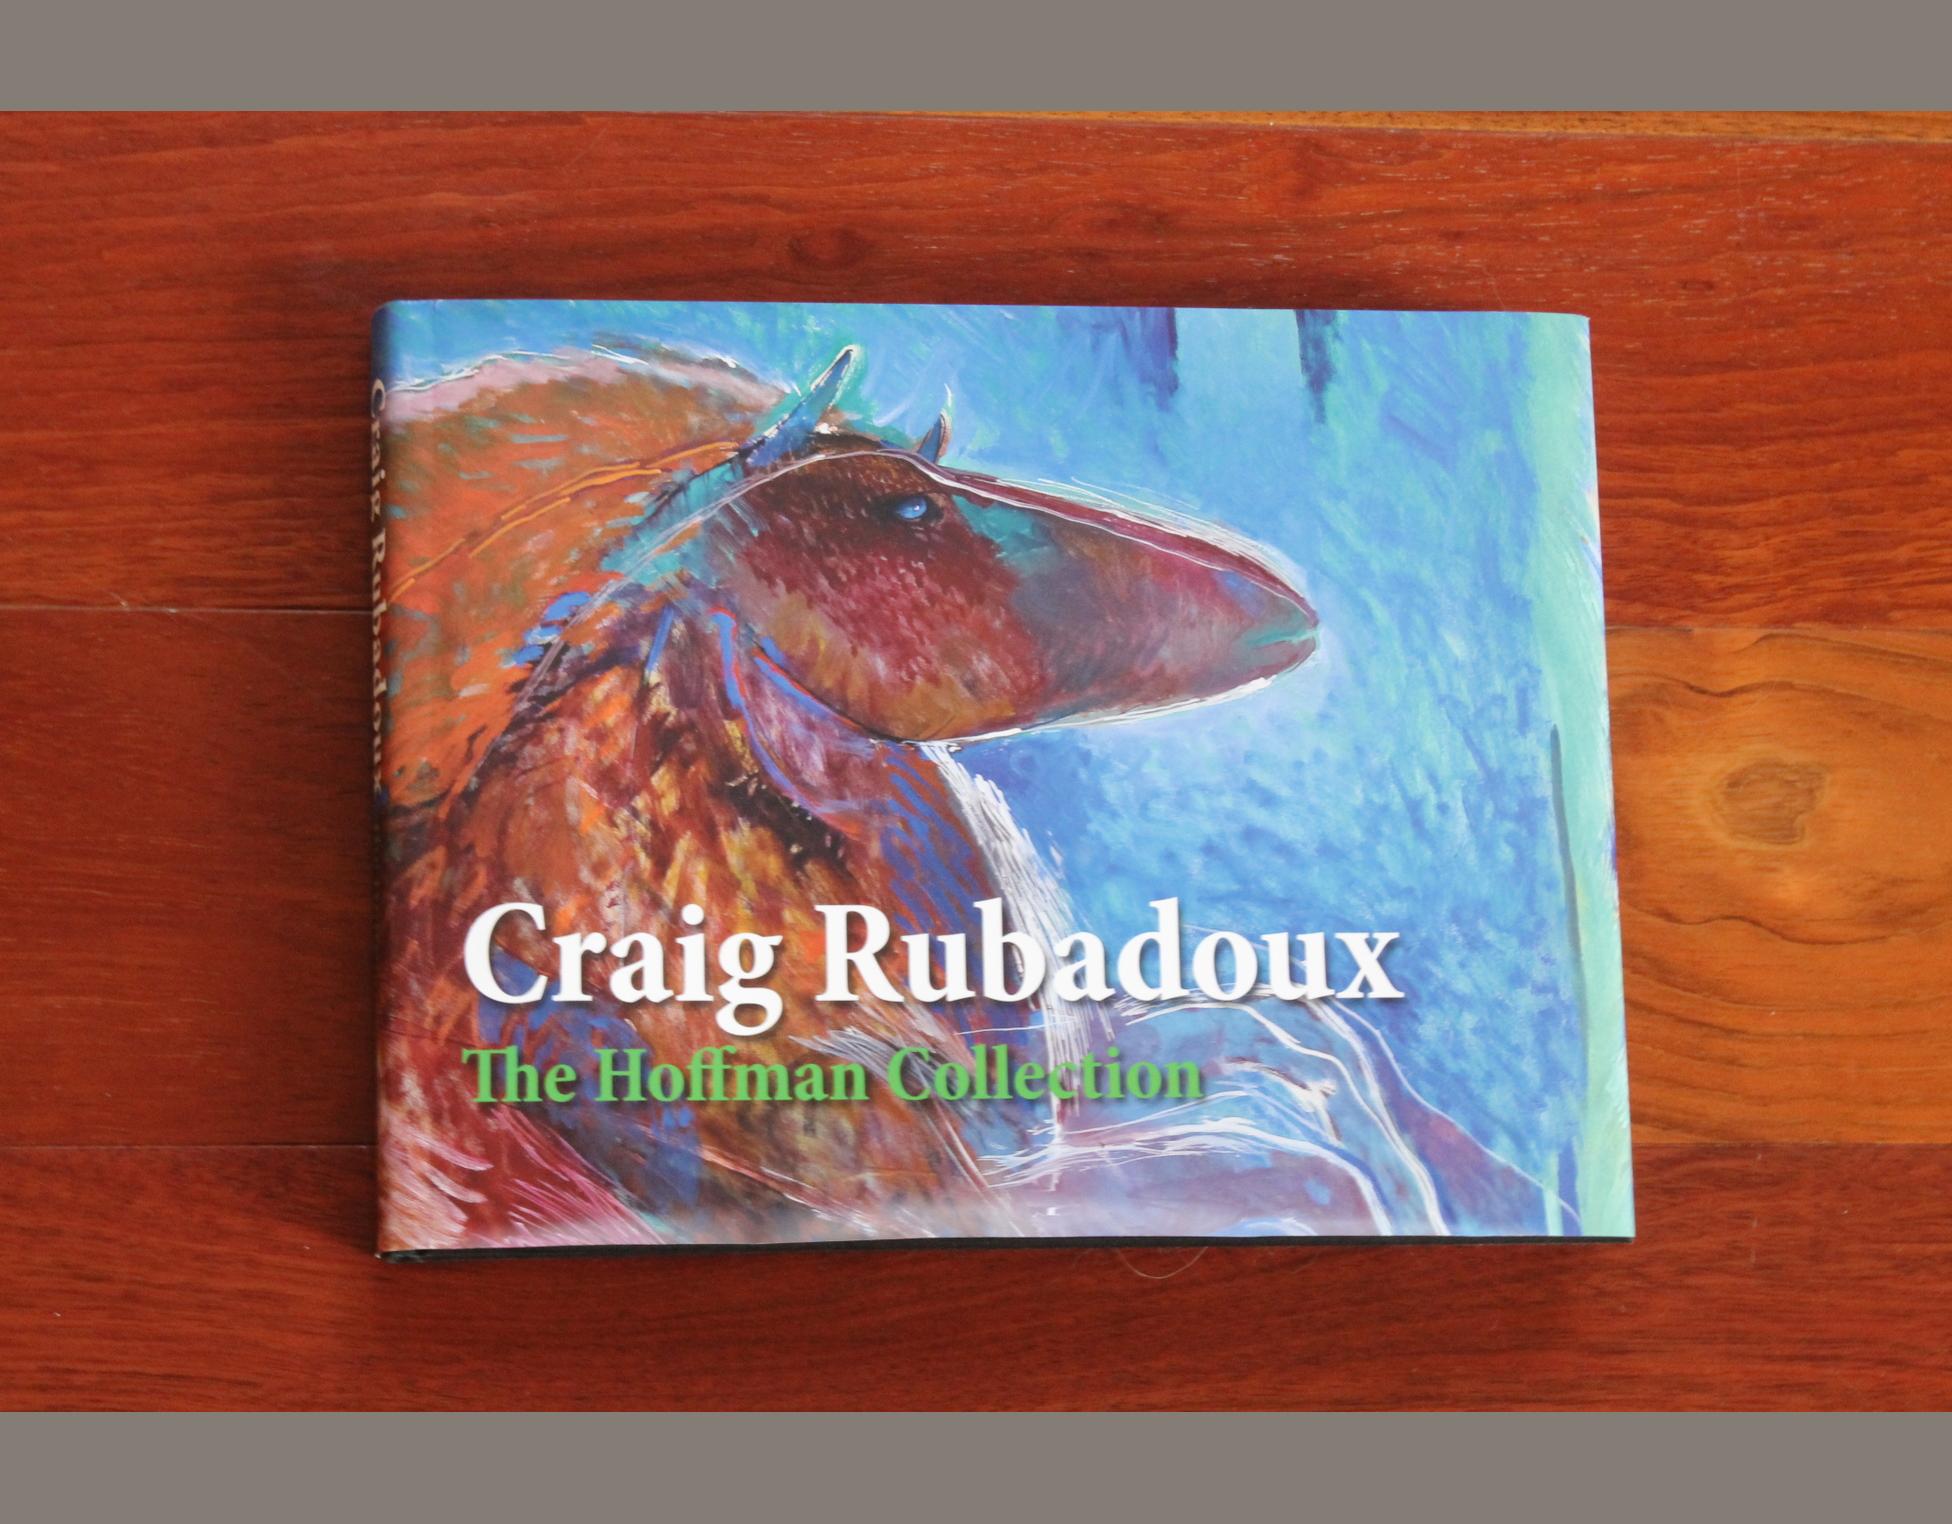 Craig Rubadoux: The Hoffman Collection